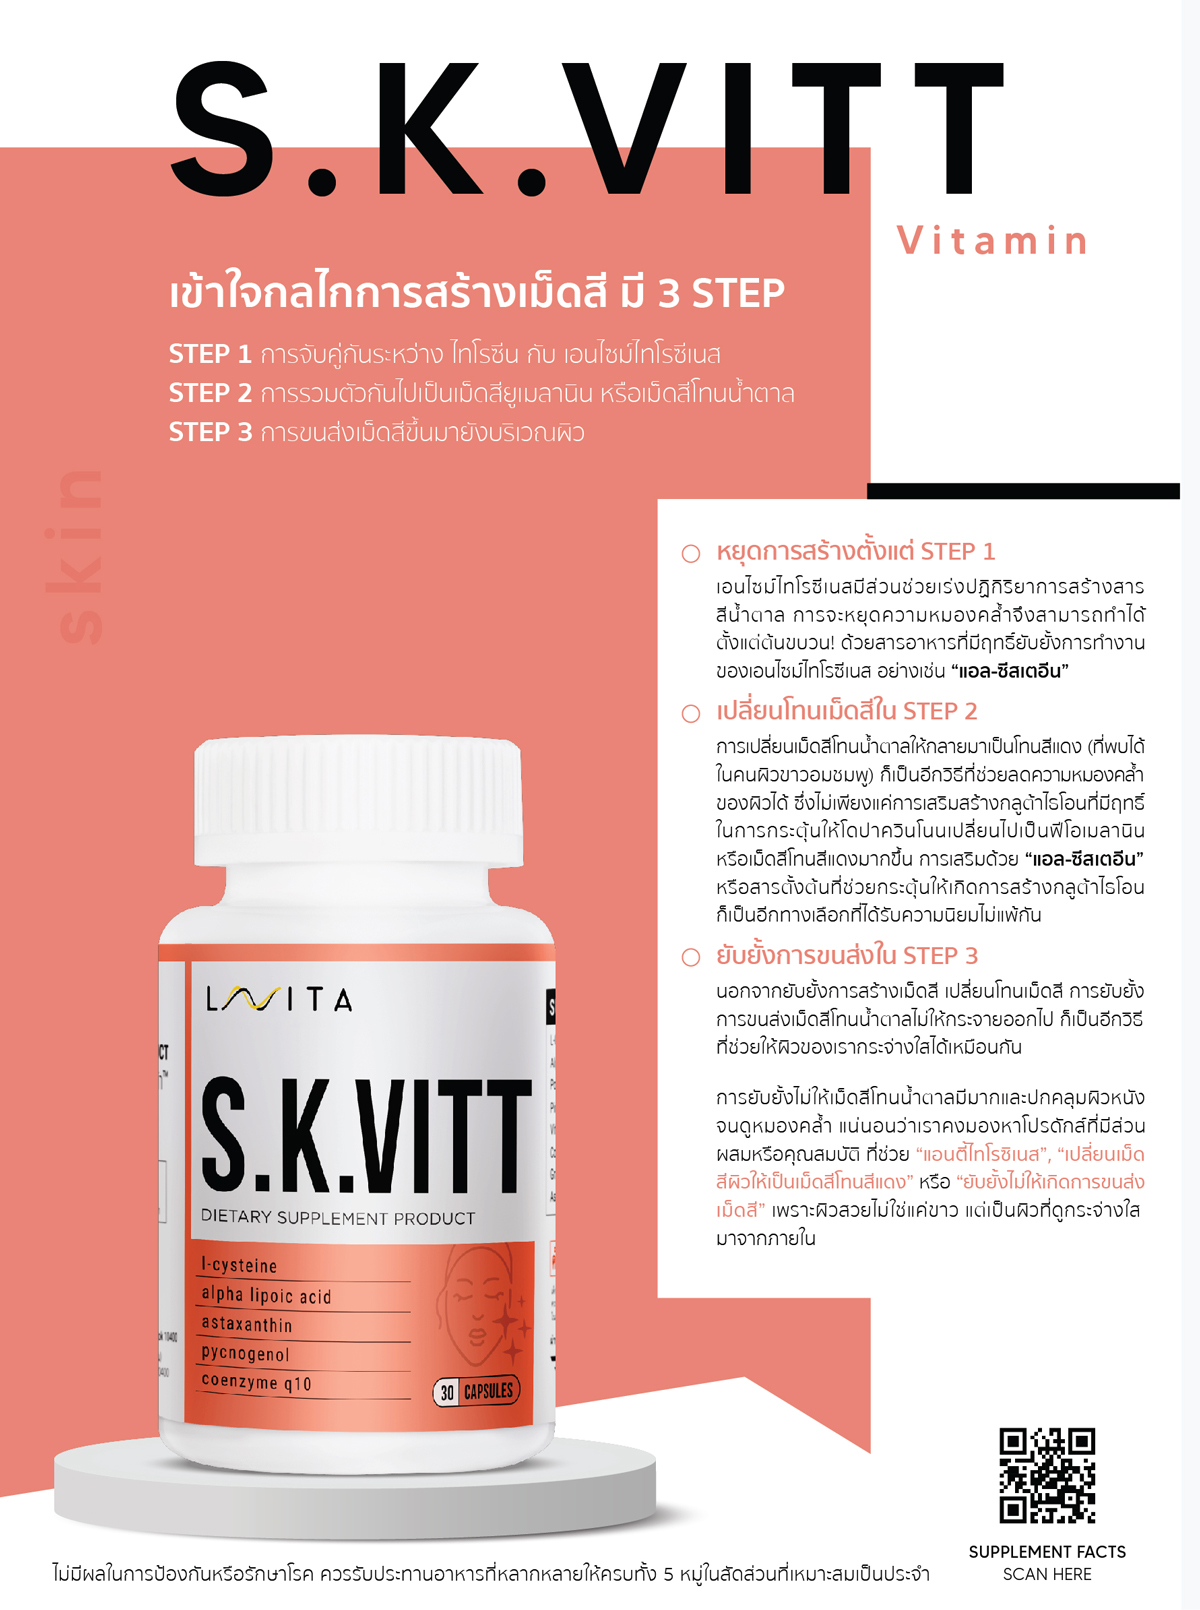 S.K.VITT Vitamin เพื่อผิวที่แลดูเปล่งปลั่งและสุขภาพดี